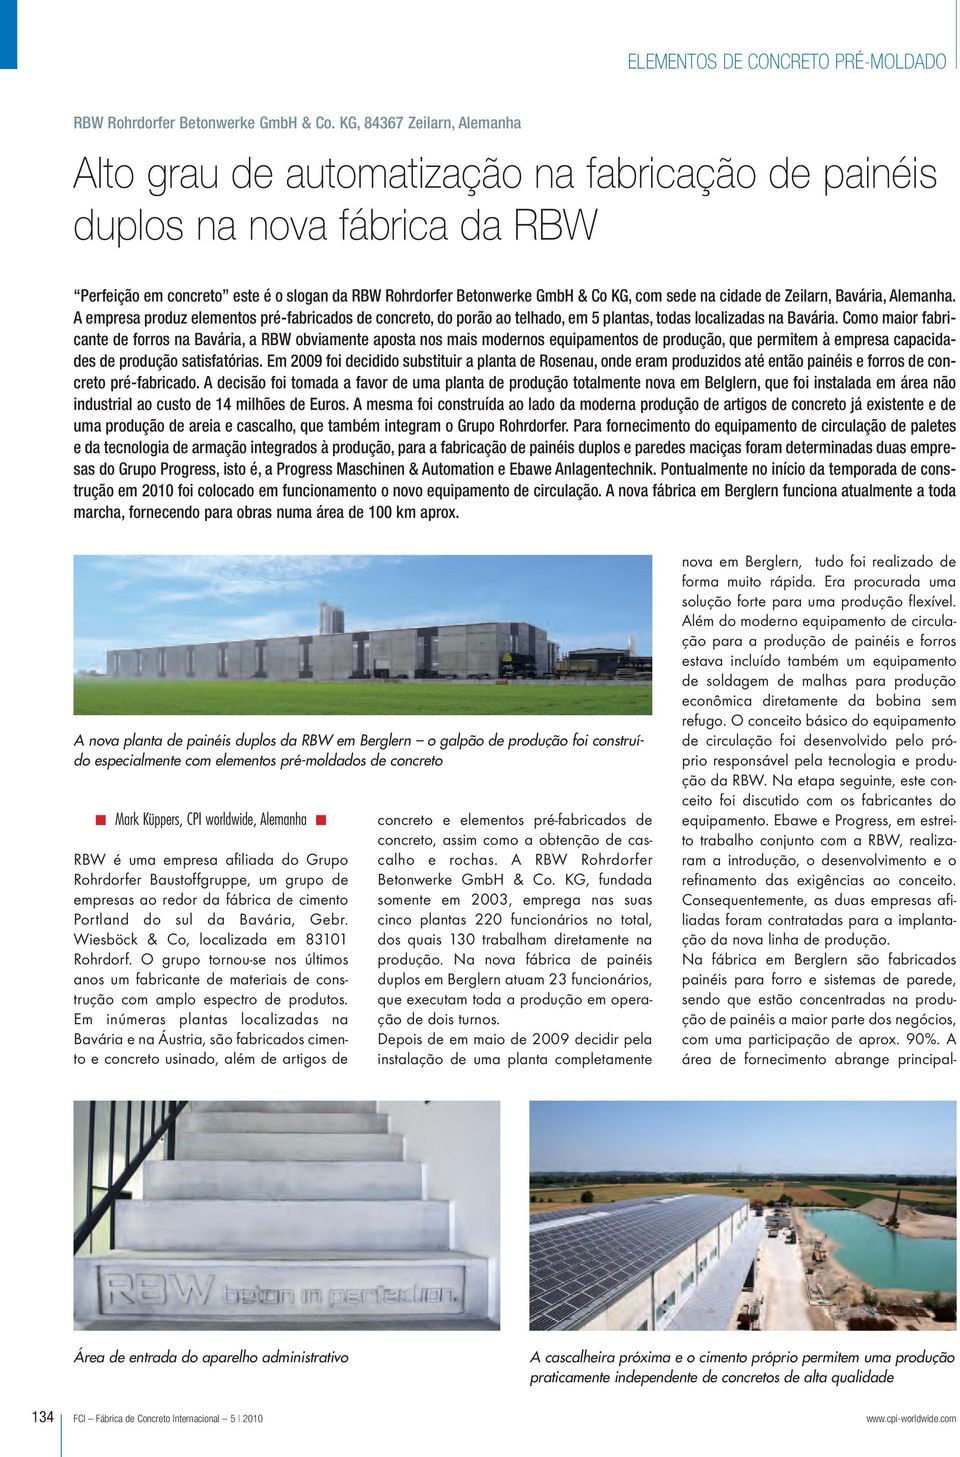 na cidade de Zeilarn, Bavária, Alemanha. A empresa produz elementos pré-fabricados de concreto, do porão ao telhado, em 5 plantas, todas localizadas na Bavária.